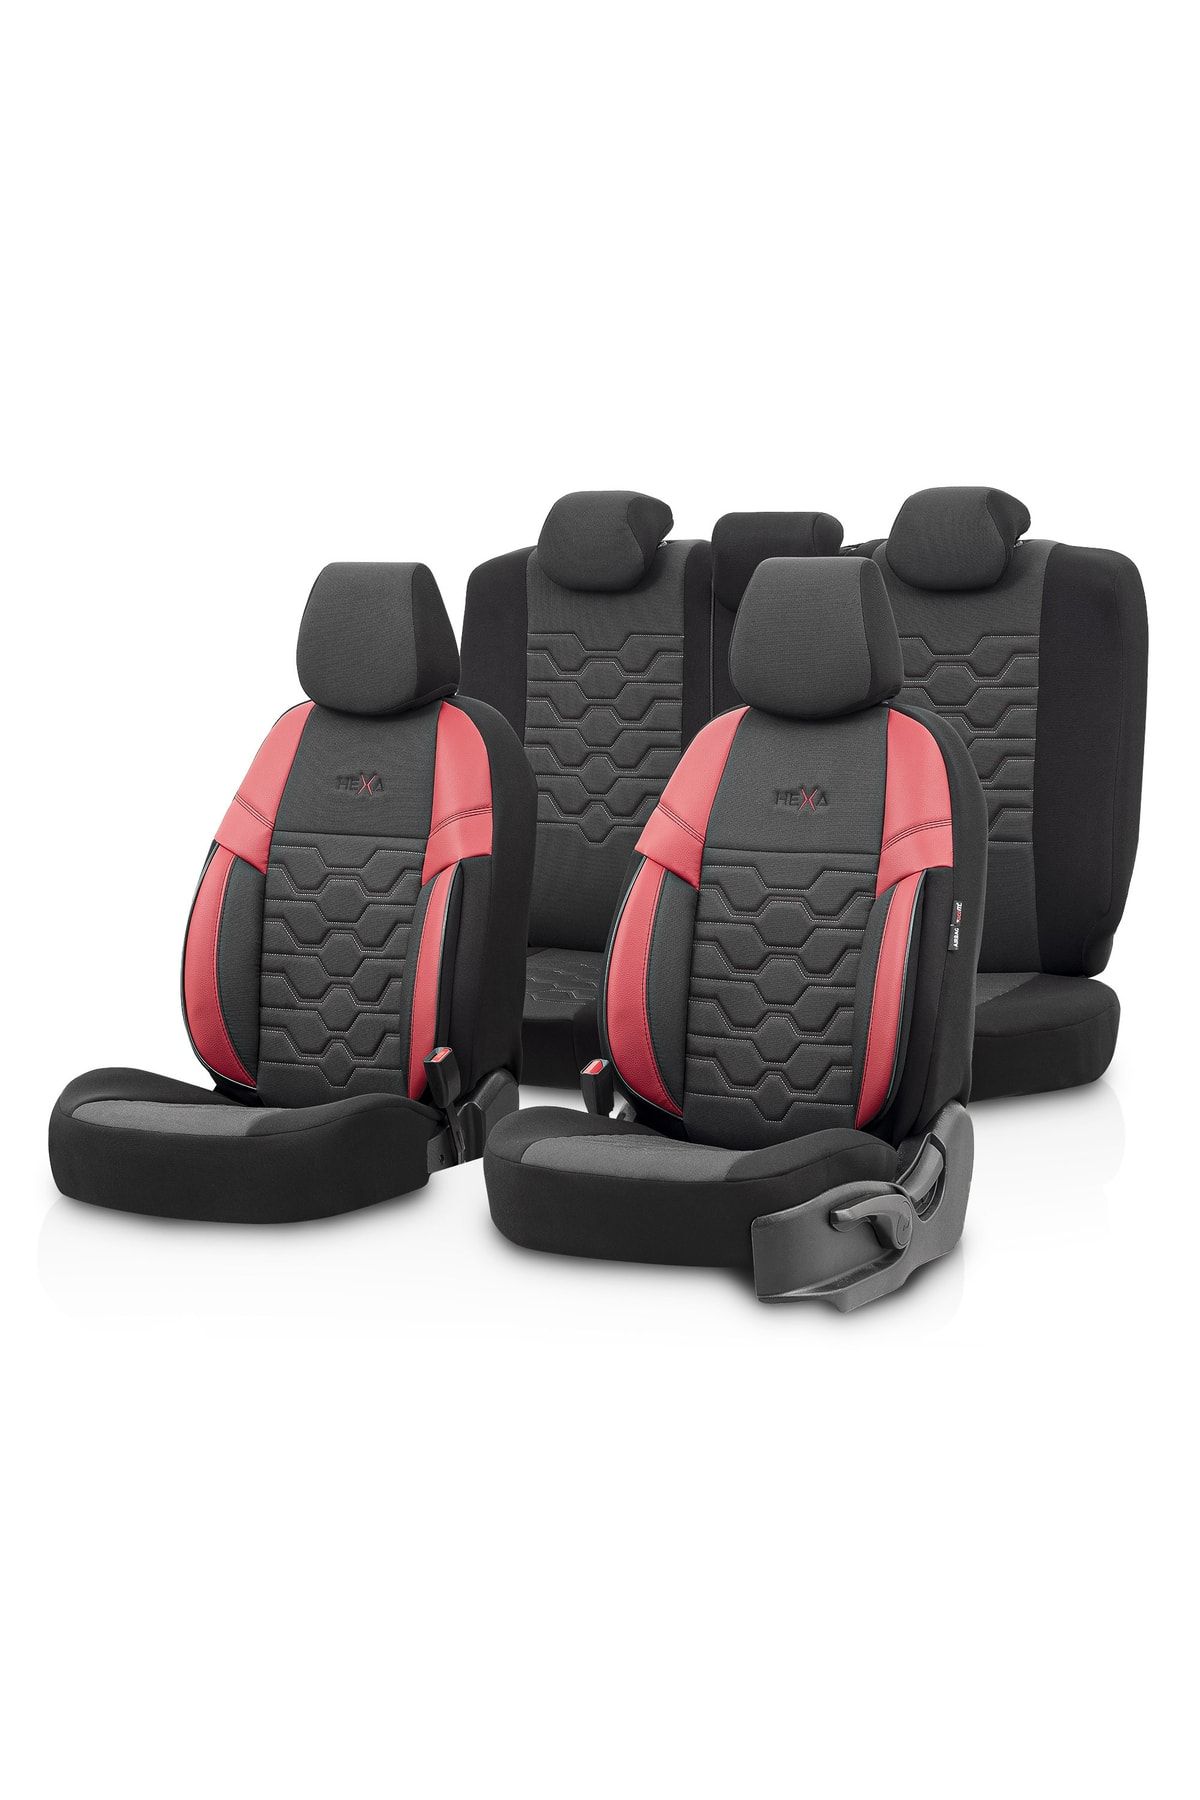 Otom Hexa Design Universal Seat Cover Red-black